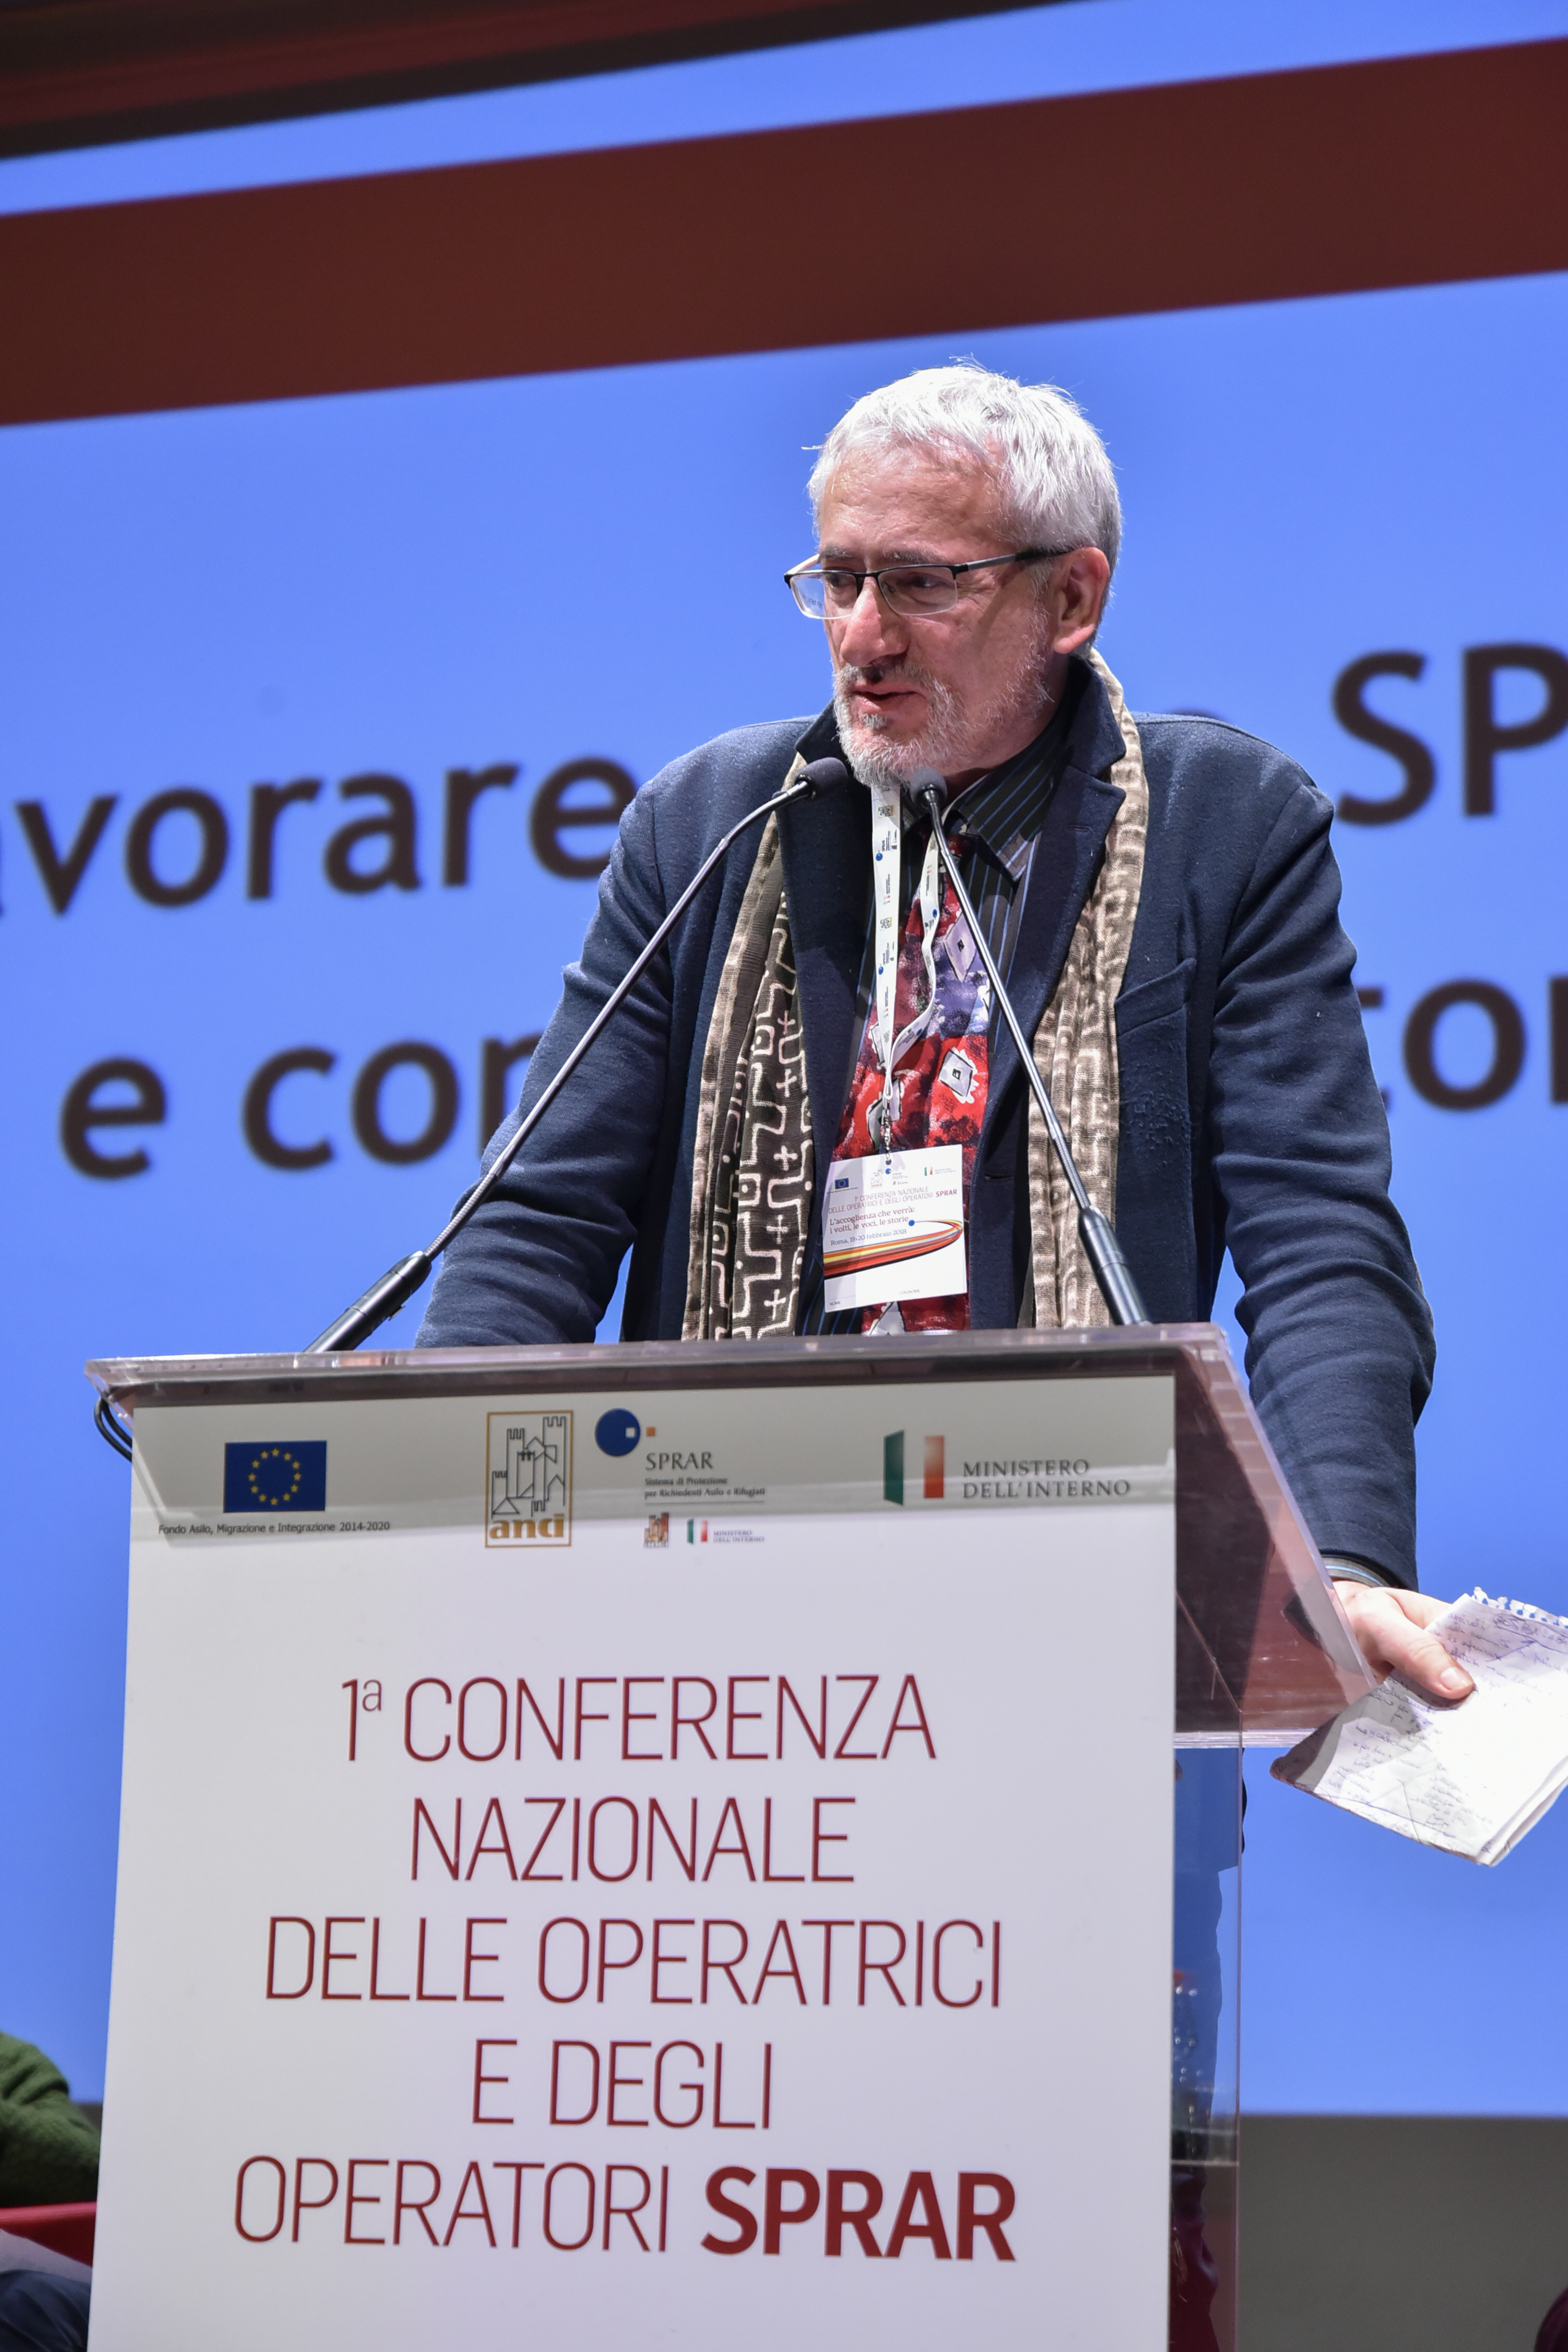 https://www.sprar.it/conferenza-nazionale-sprar/wp-content/uploads/2018/08/2-Bonesso.jpg